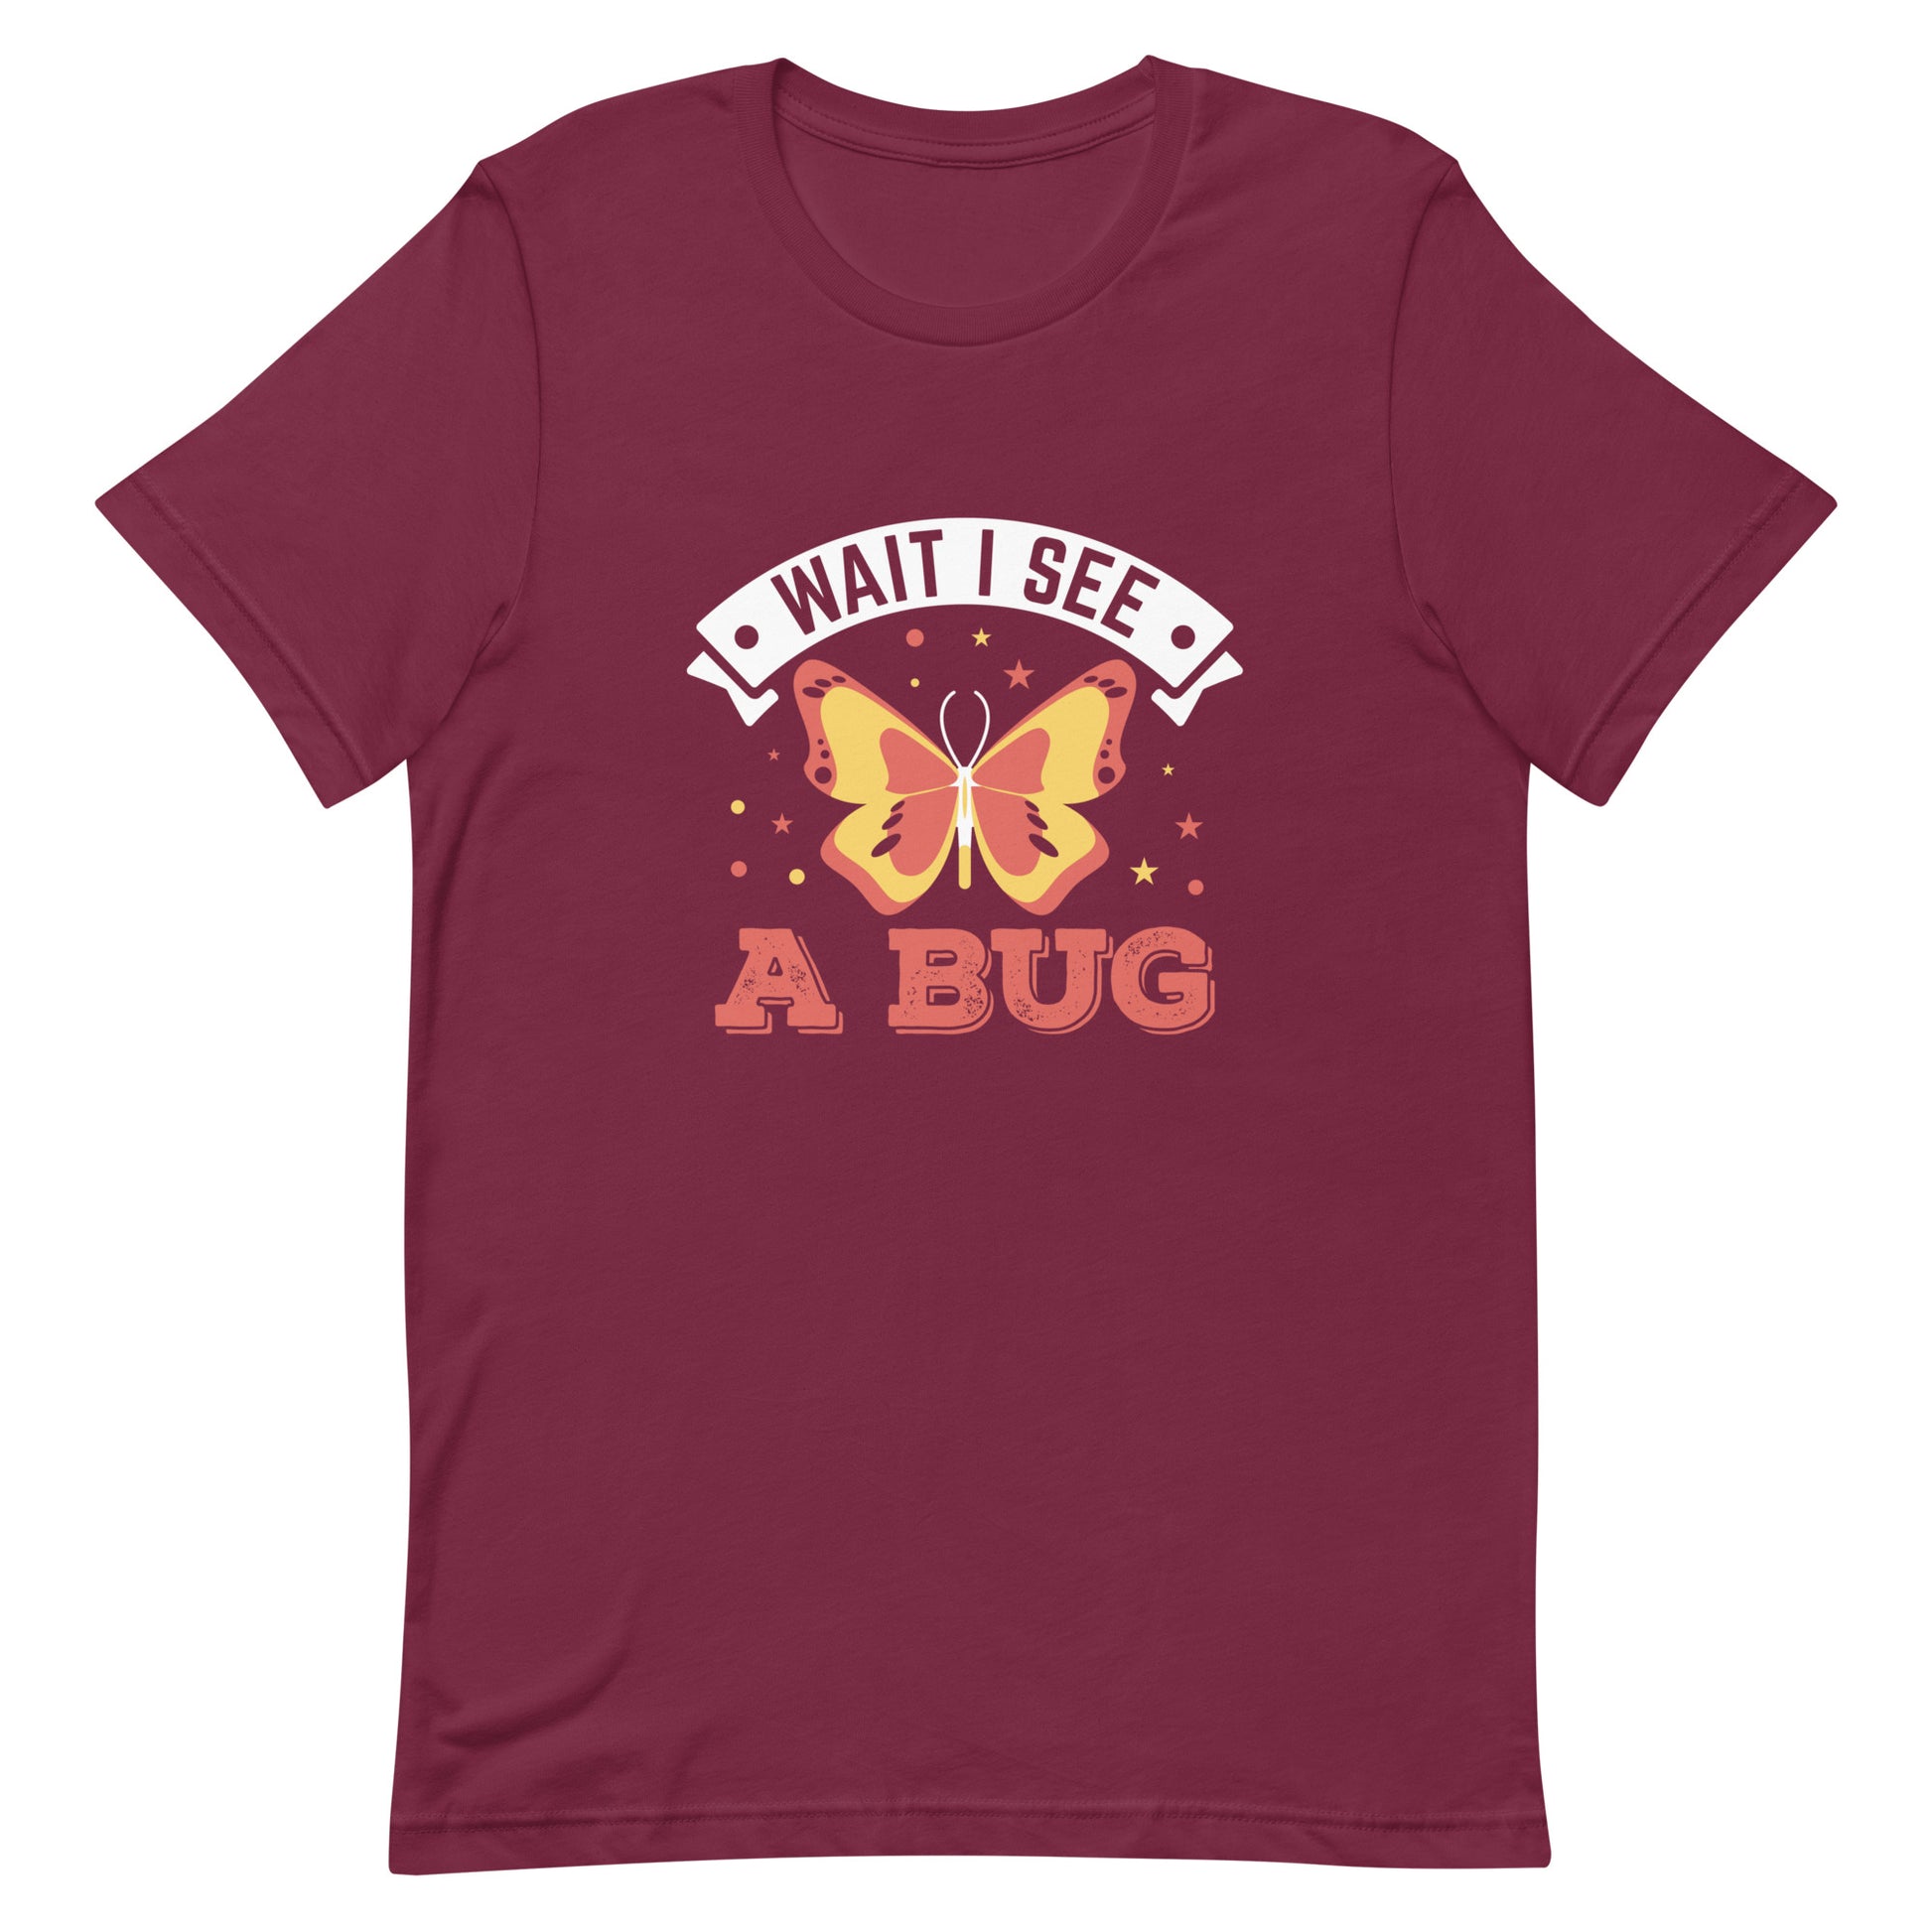 Wait I See a Bug Unisex t-shirt